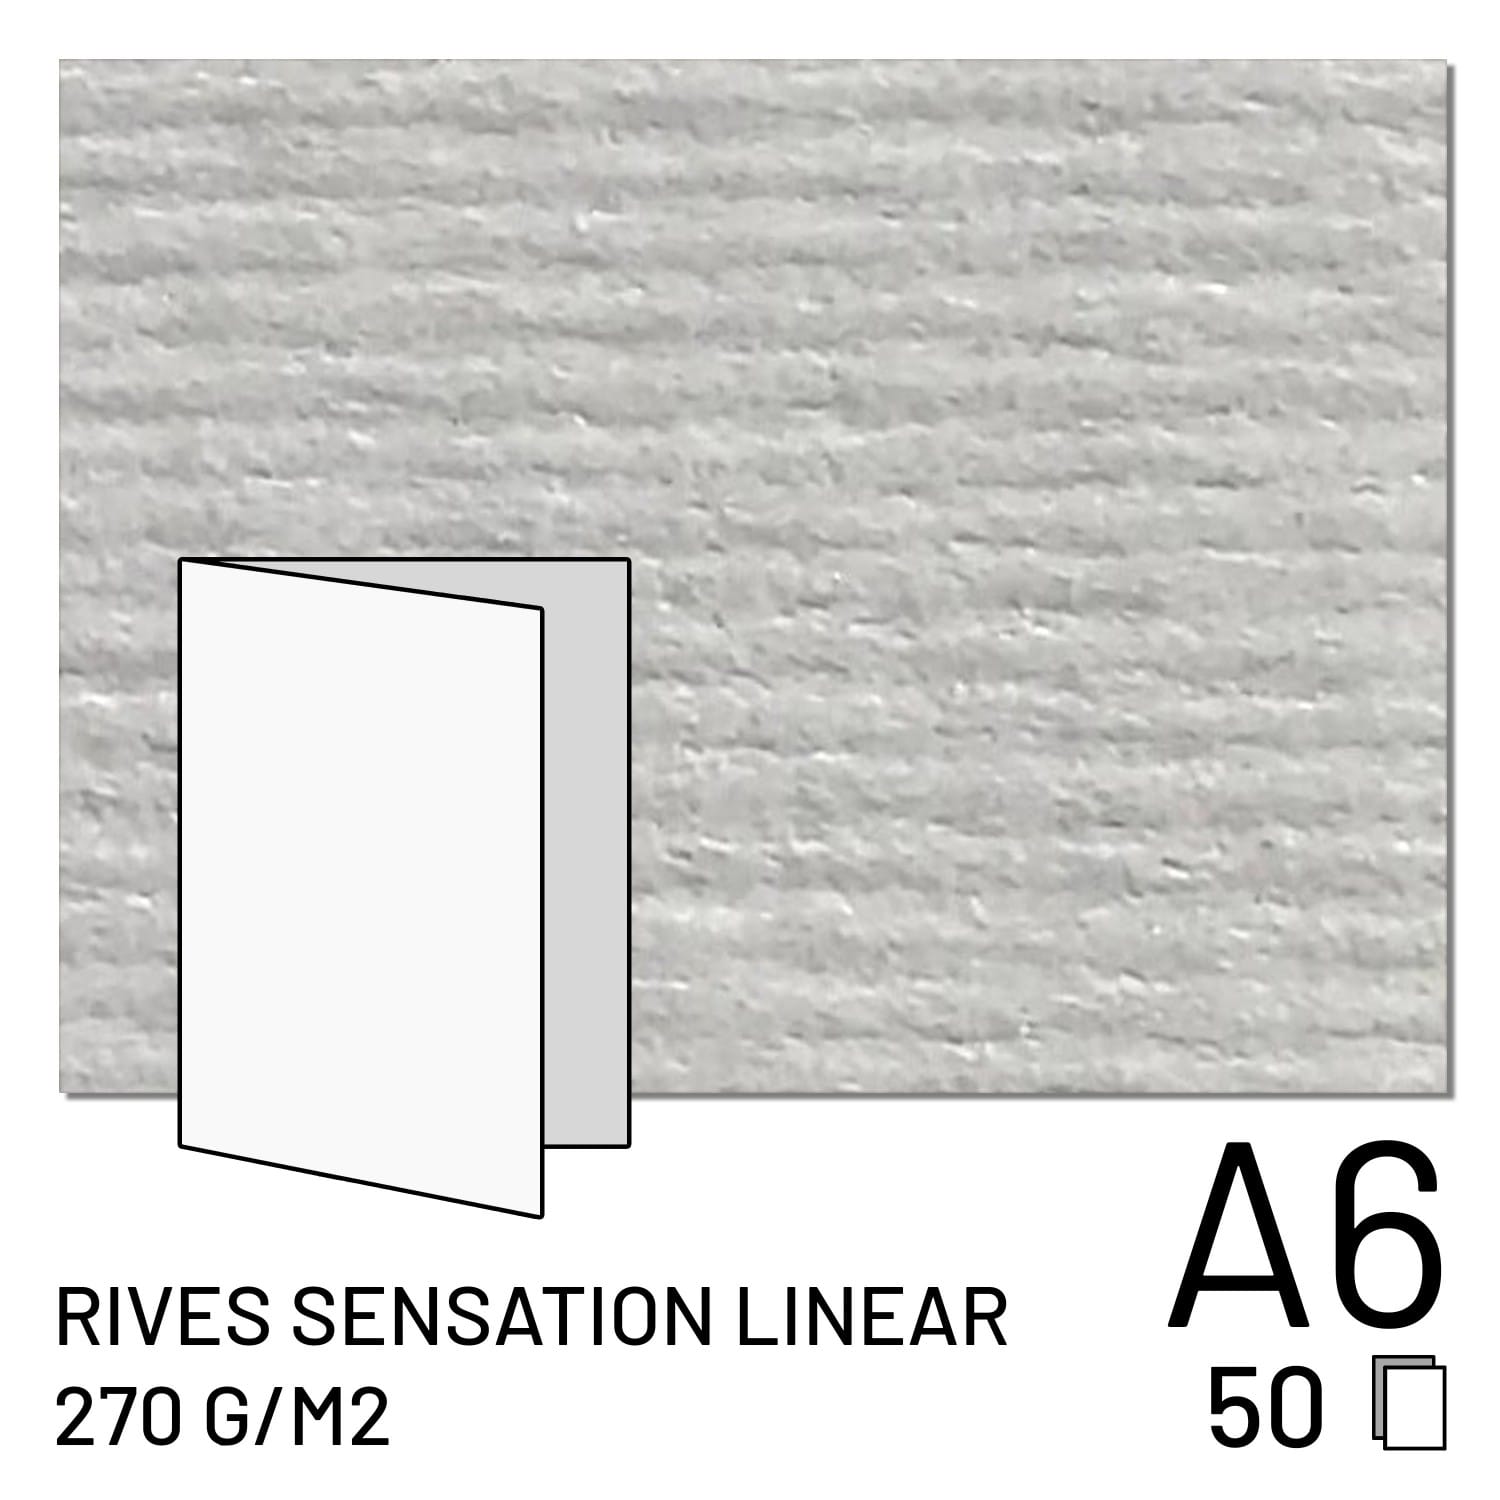 Papier FUJI Rives Sensation Linear 270g A5 plié / A6 2 volets (50 feuilles) (70100148098)